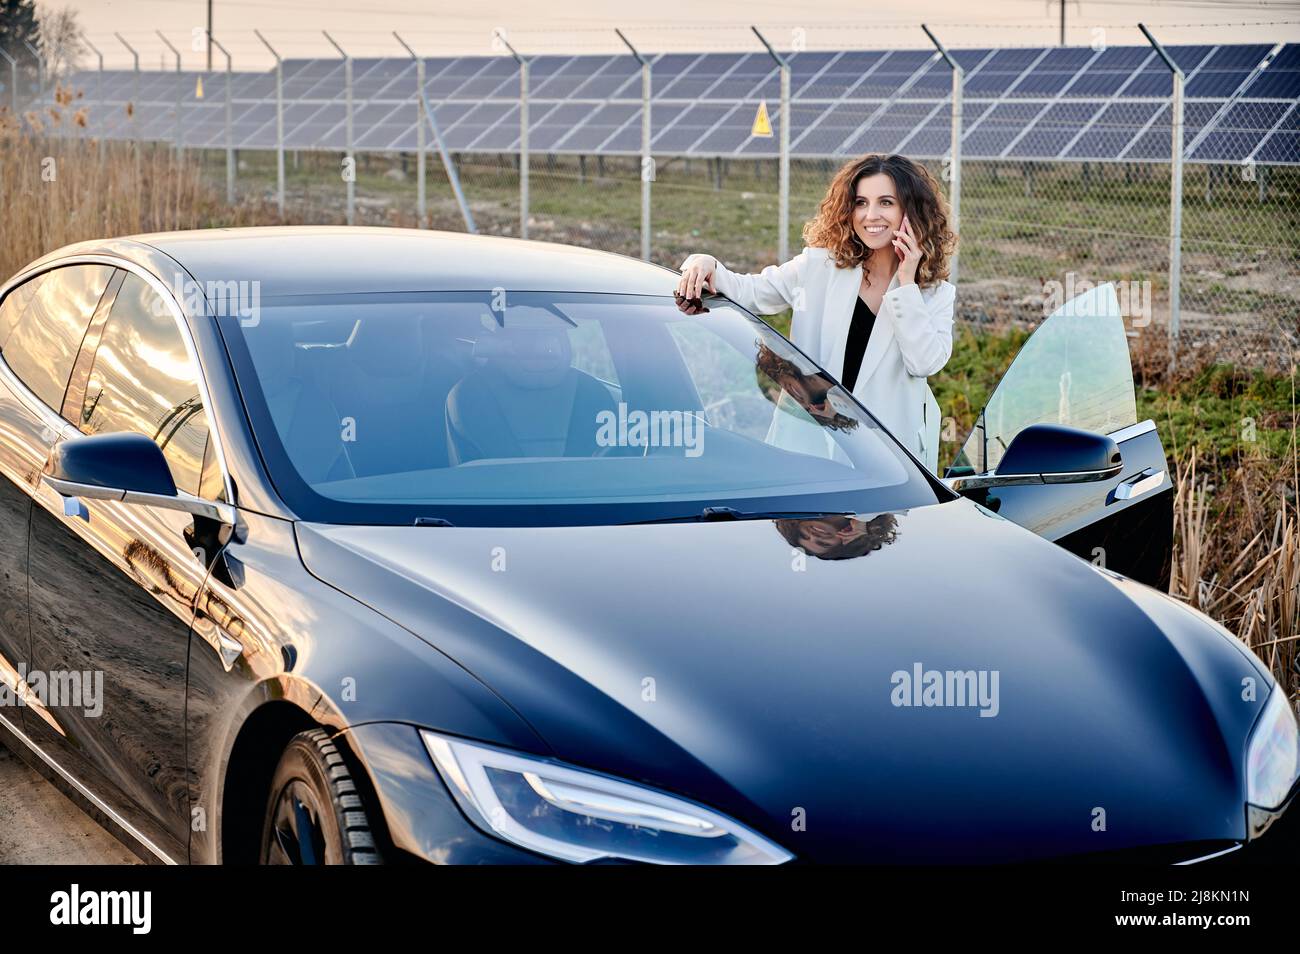 Jeune femme parlant au téléphone en se tenant près d'une voiture ouverte. Sur la centrale solaire backdrop produisant de l'électricité durable et des énergies renouvelables. Économie et écologie énergie indentisterie. Banque D'Images